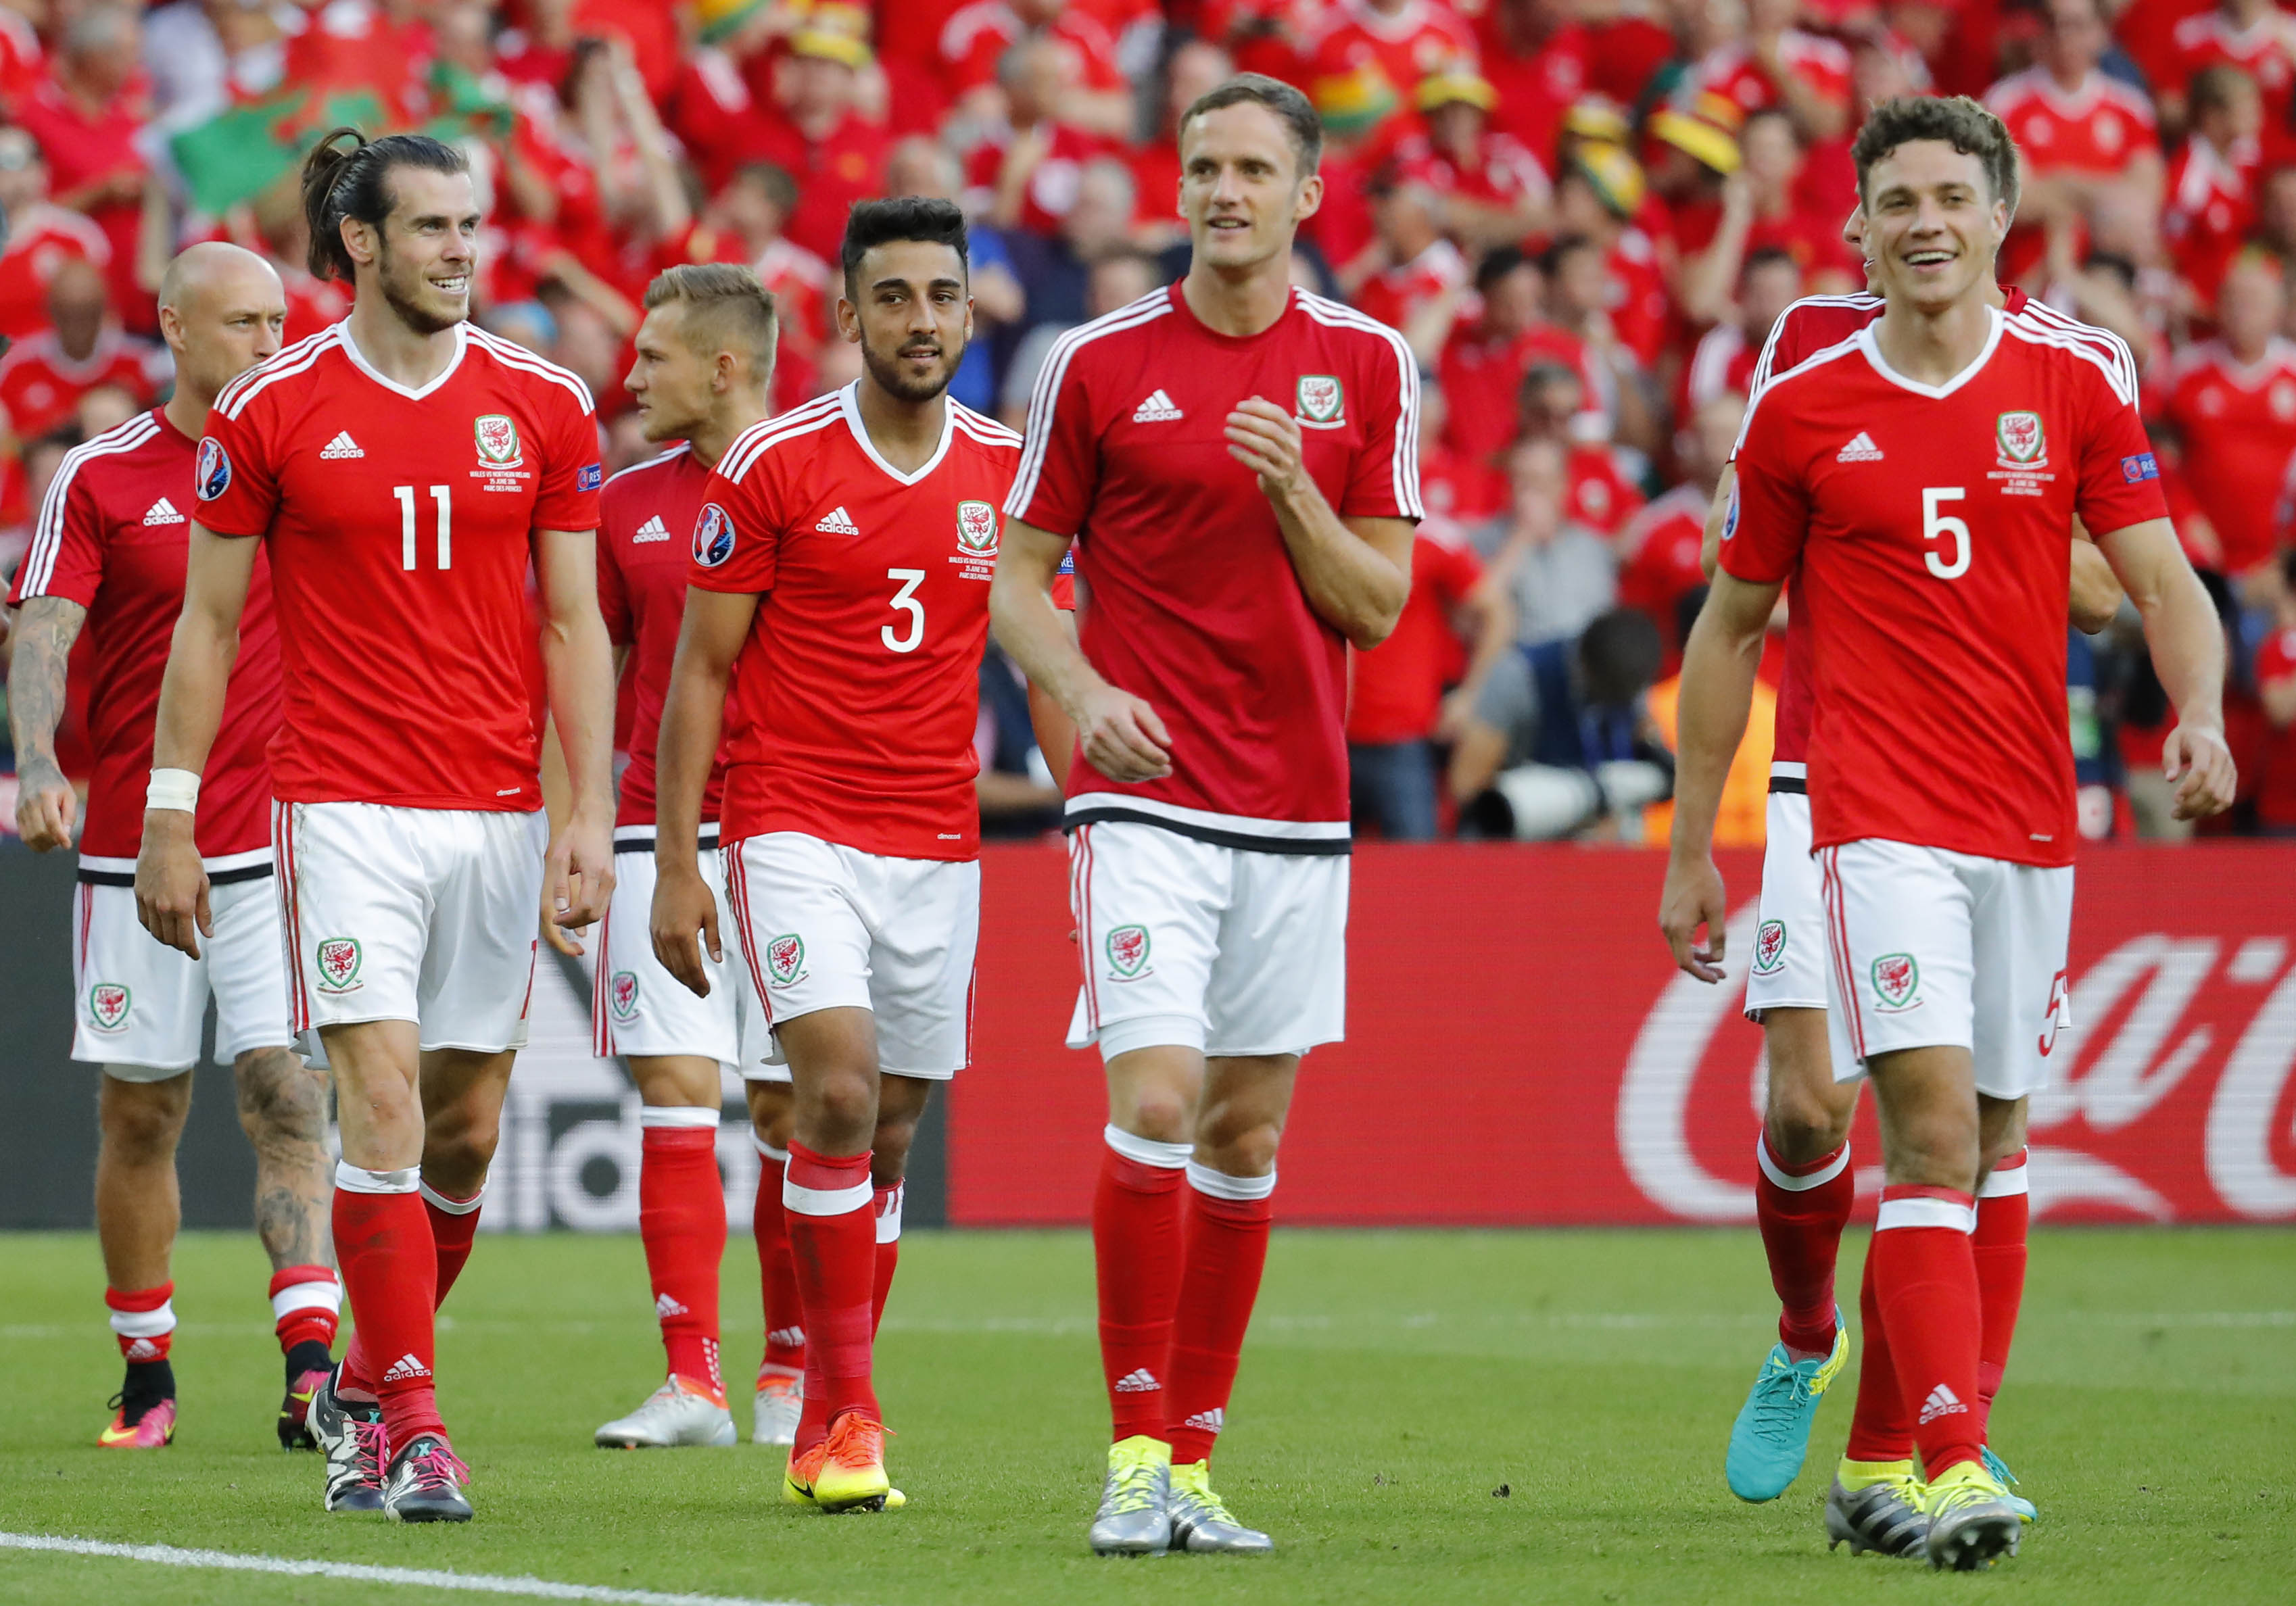 Gales vota quedarse en la Eurocopa con triunfo pírrico ante Irlanda del Norte (1-0)